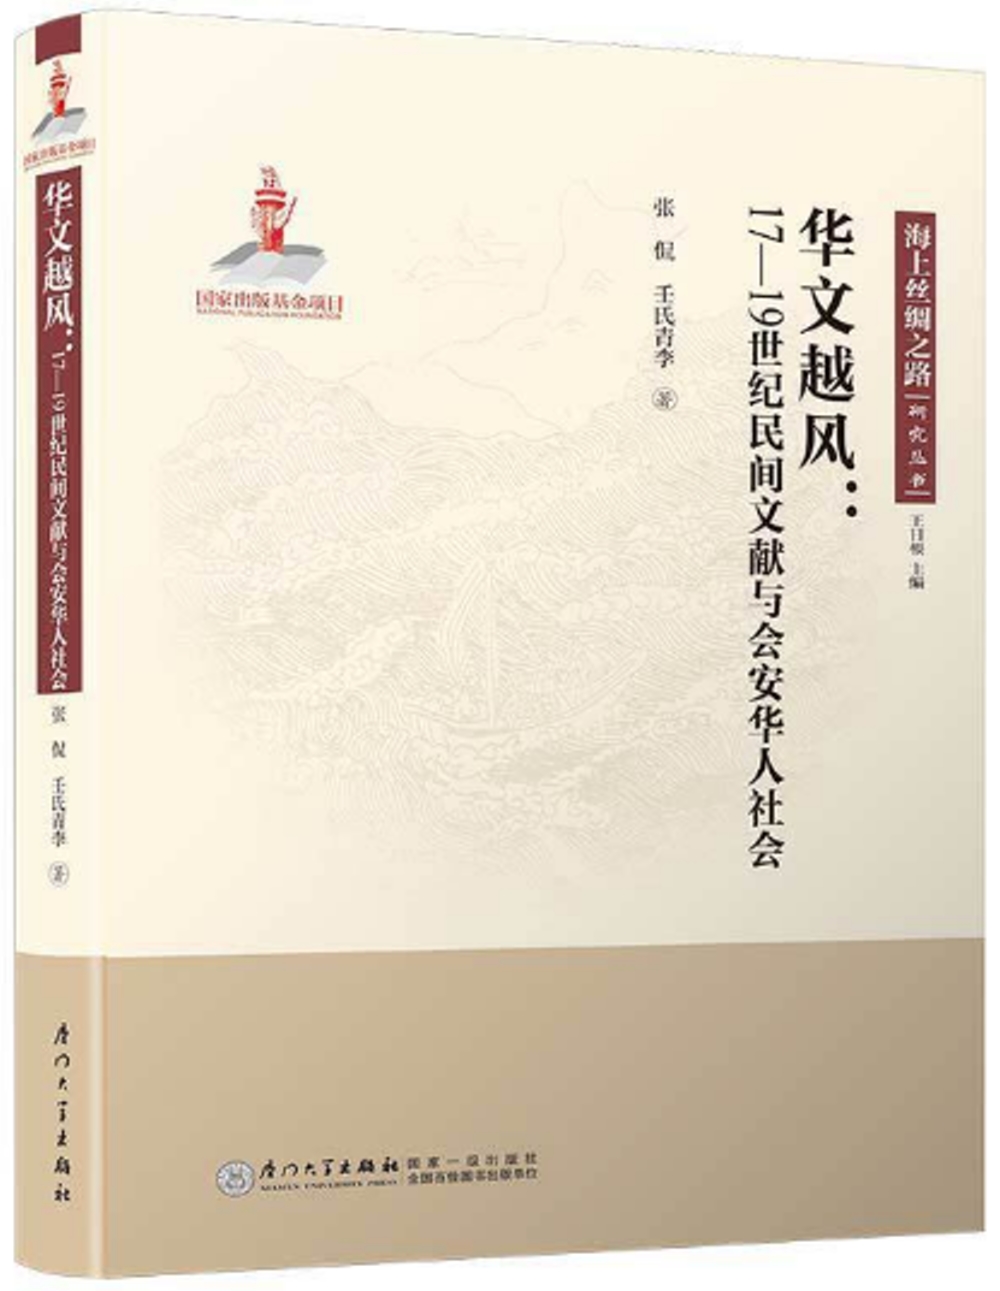 華文越風：17-19世紀民間文獻與會安華人社會